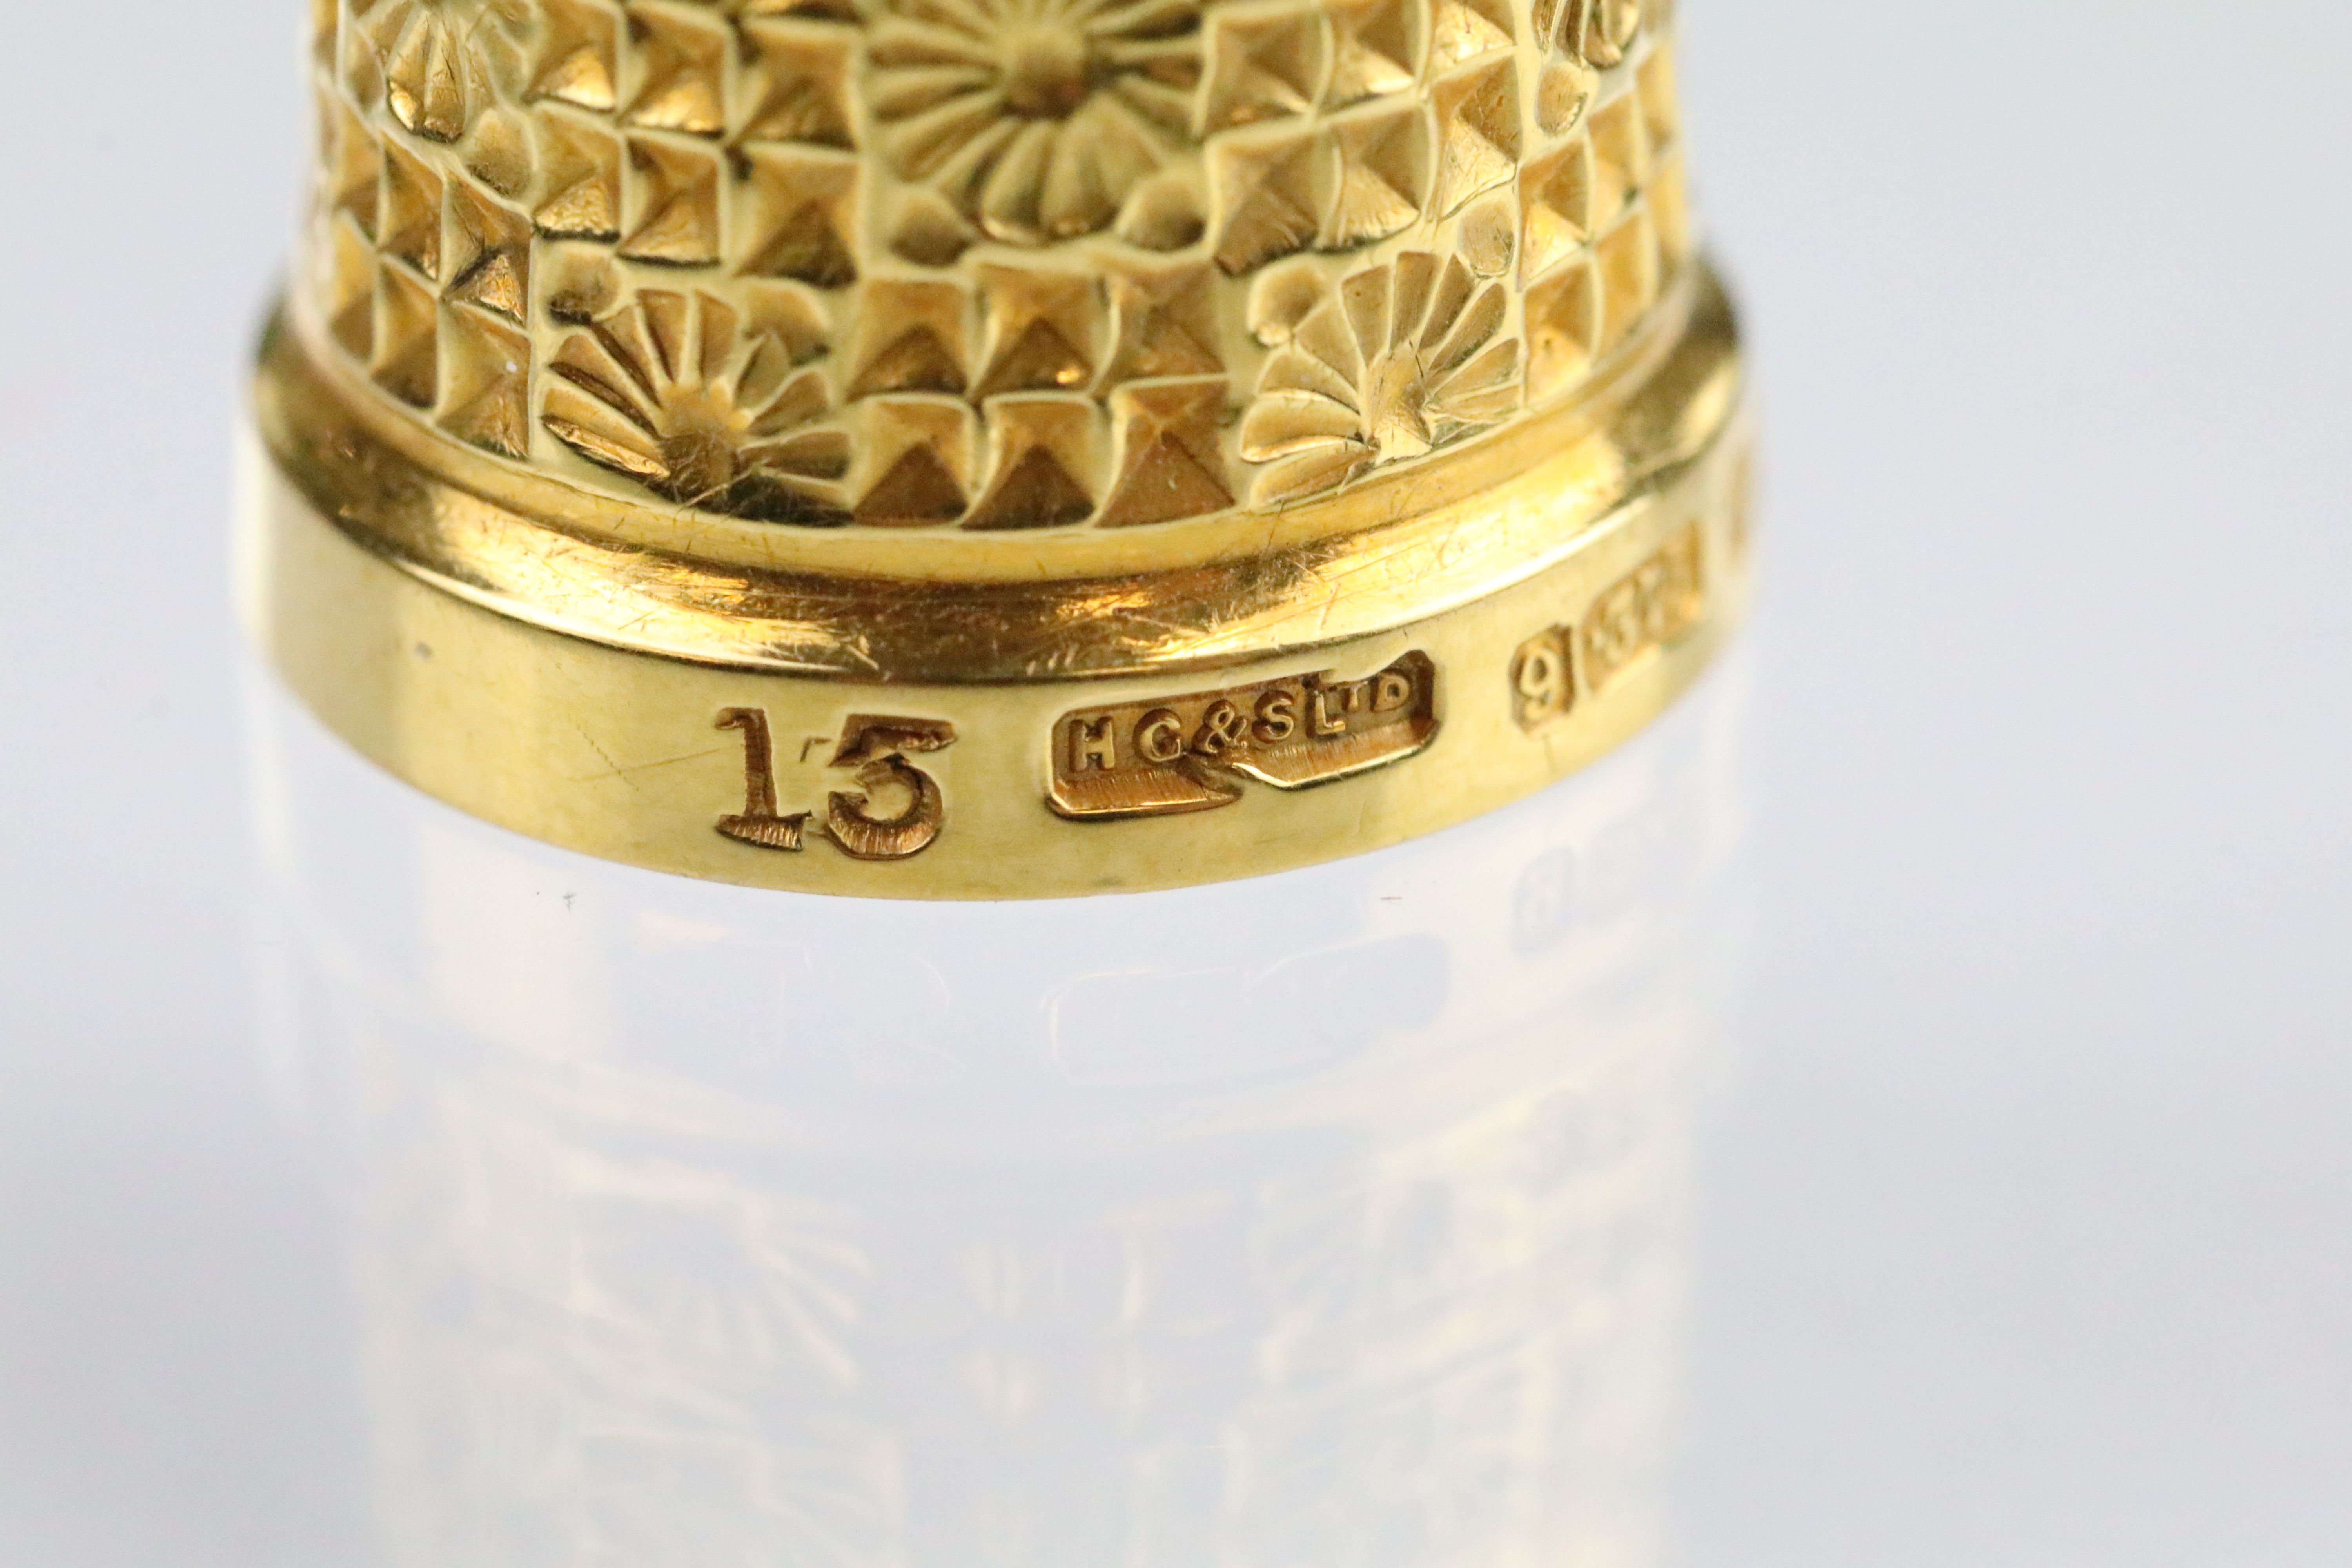 9ct gold hallmarked thimble with moulded details, size 15. Hallmarked Birmingham 1902, HG & S Ltd. - Bild 3 aus 4